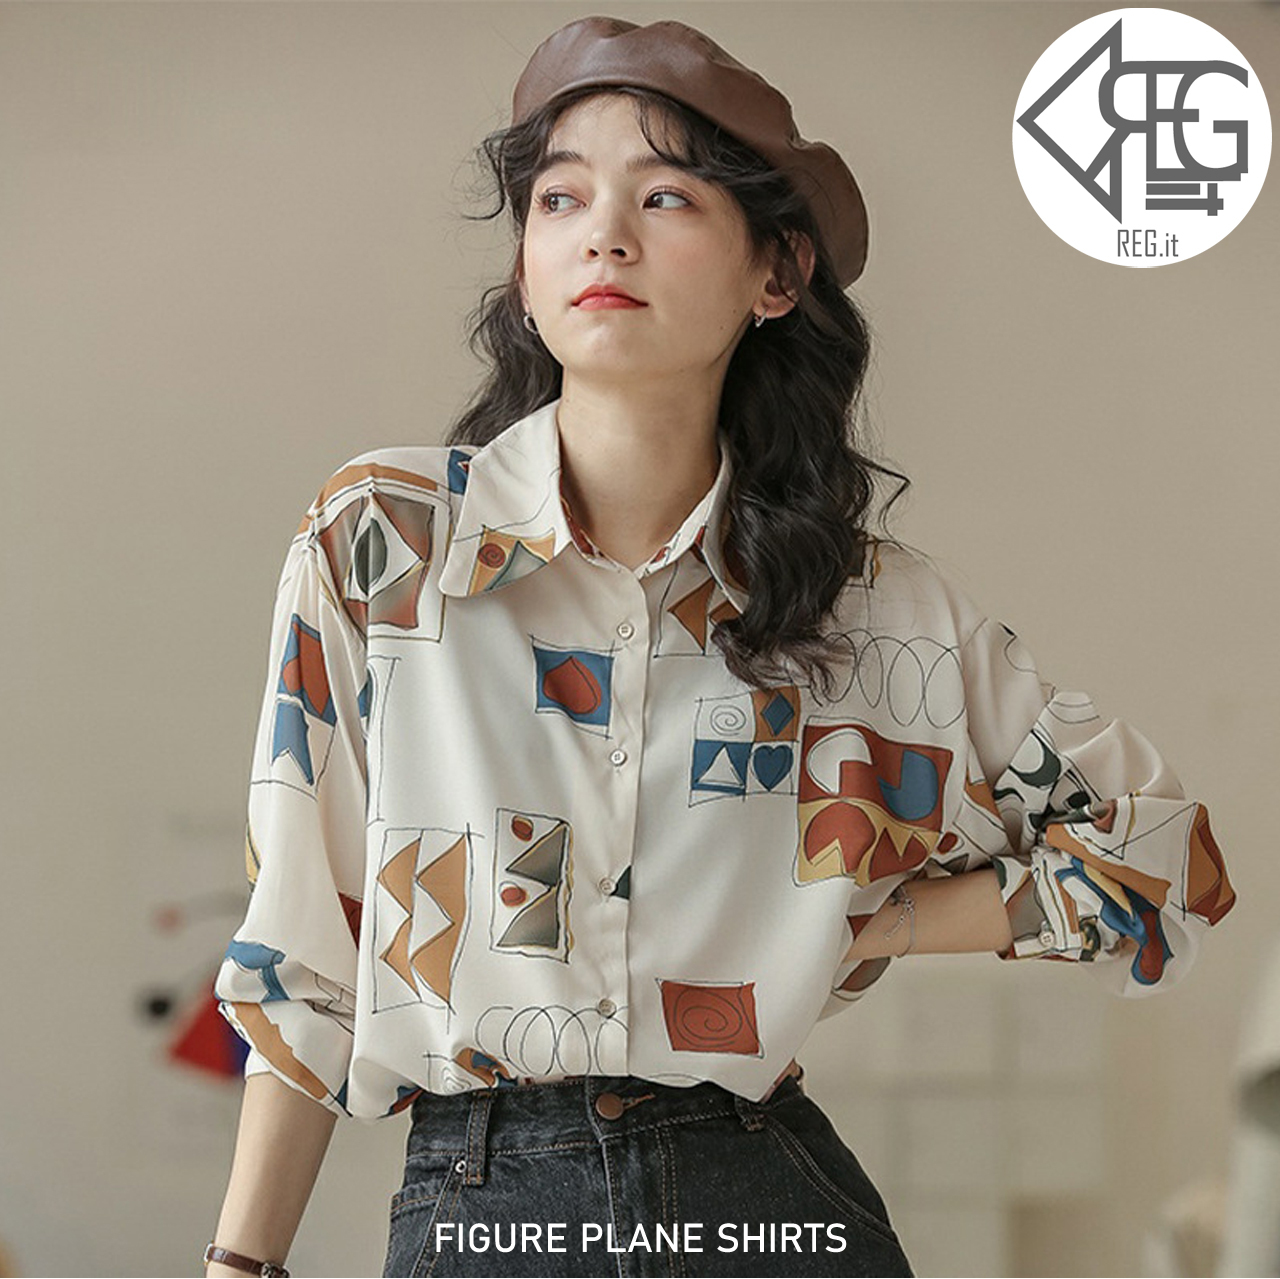 Figure Plane Shirts 送料無料 韓国ファッション 韓国服 10代代30代 かわいいブラウス おしゃれなブラウス プチプラコーデ おしゃれ かわいい Reg It